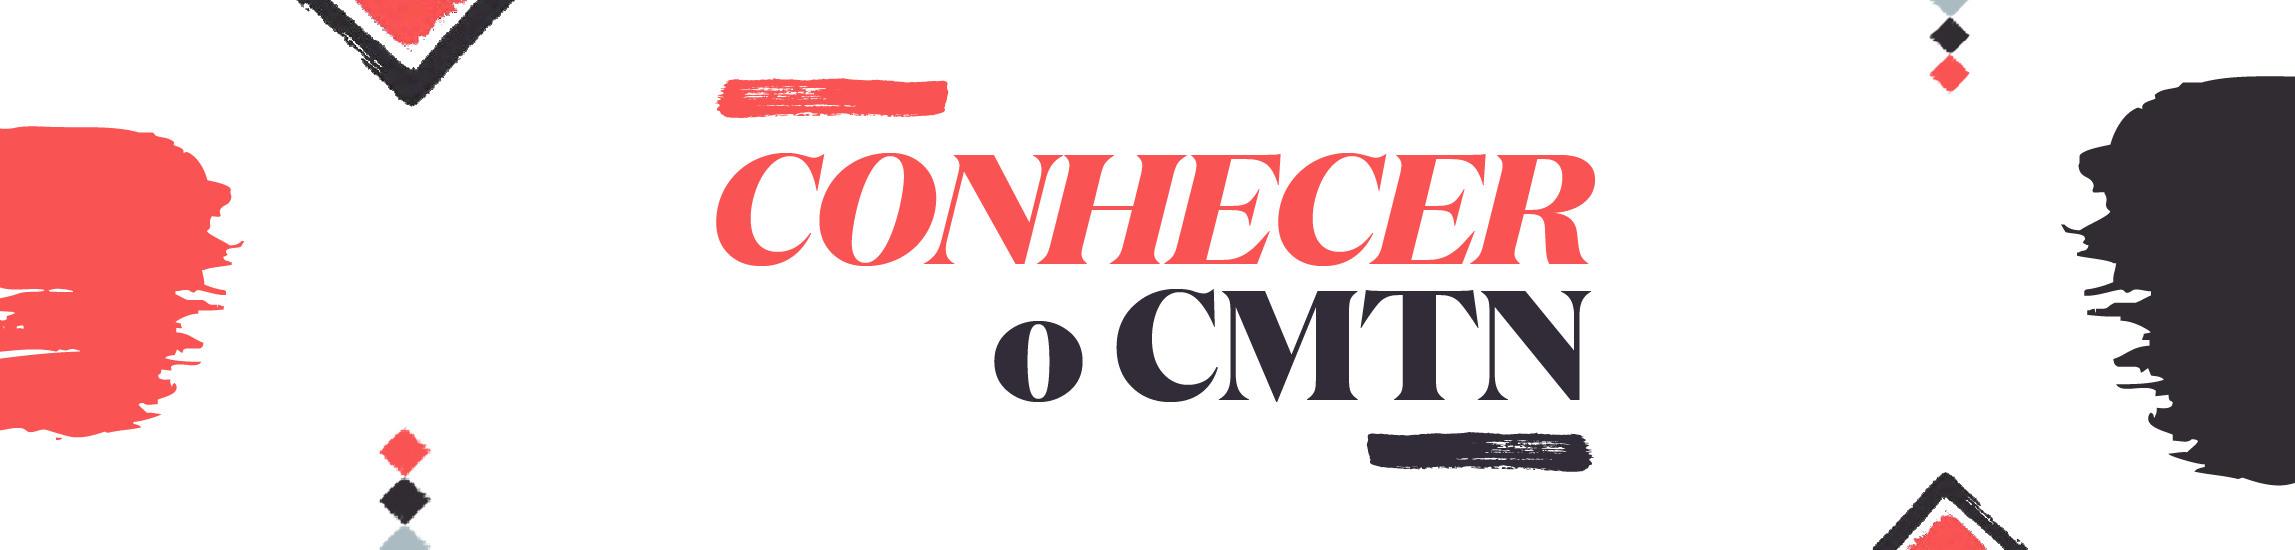 CMTN-banner-wide